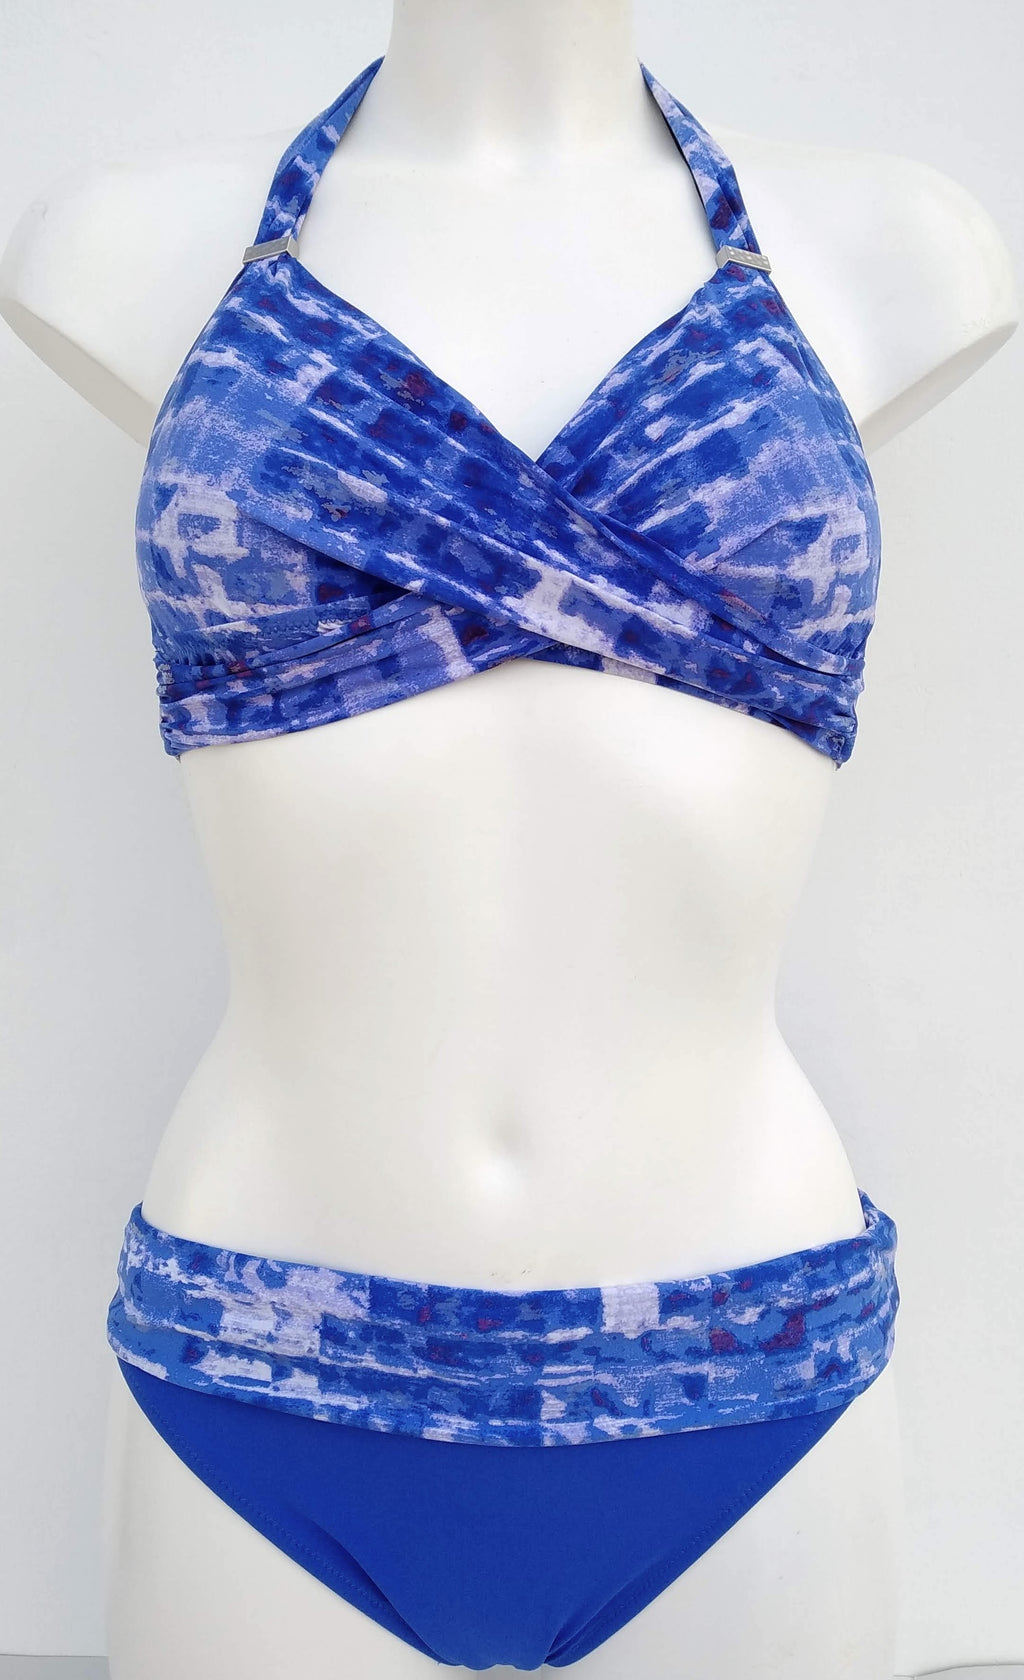  Blue Bikini Two-pieces halter bra fully lined padded bra, Bañador azul con sujetador sin aros, muy envolvente y sujetando el pecho.  Bikinn.com